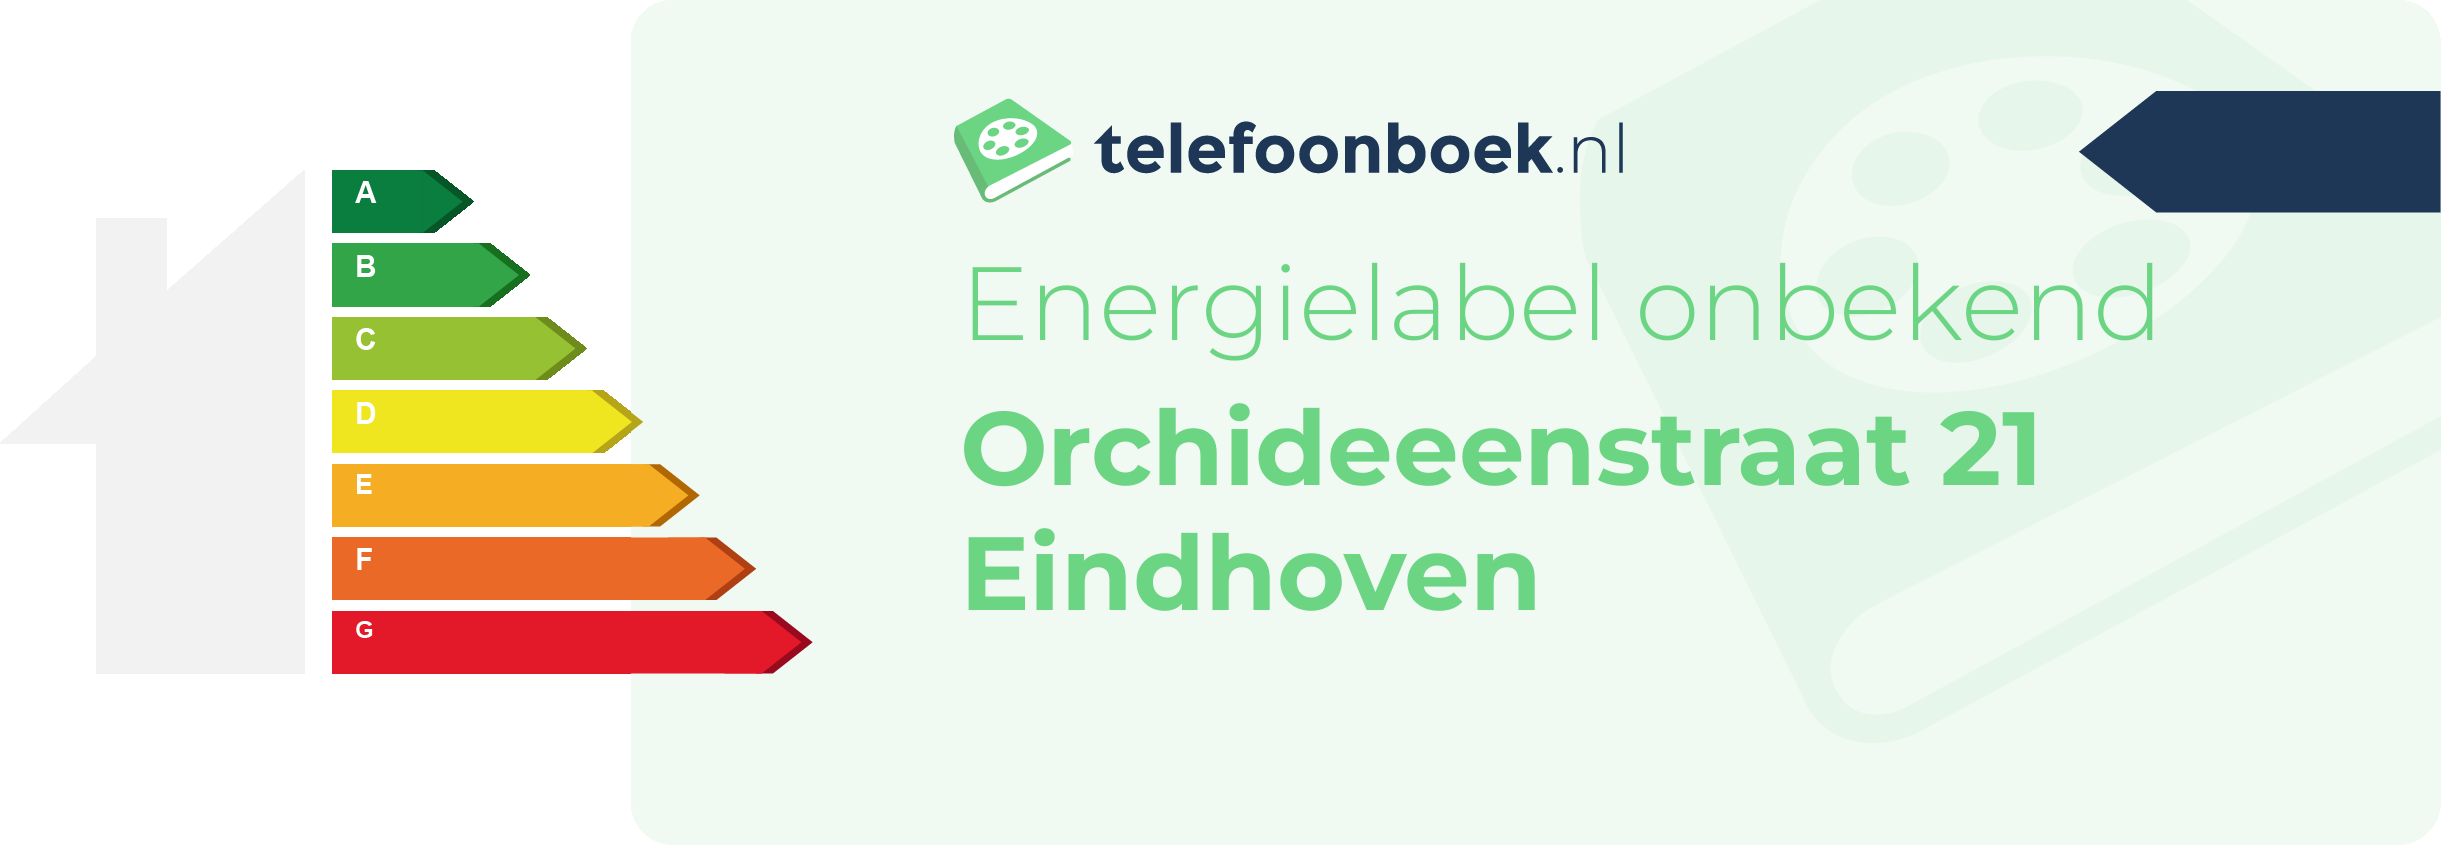 Energielabel Orchideeenstraat 21 Eindhoven